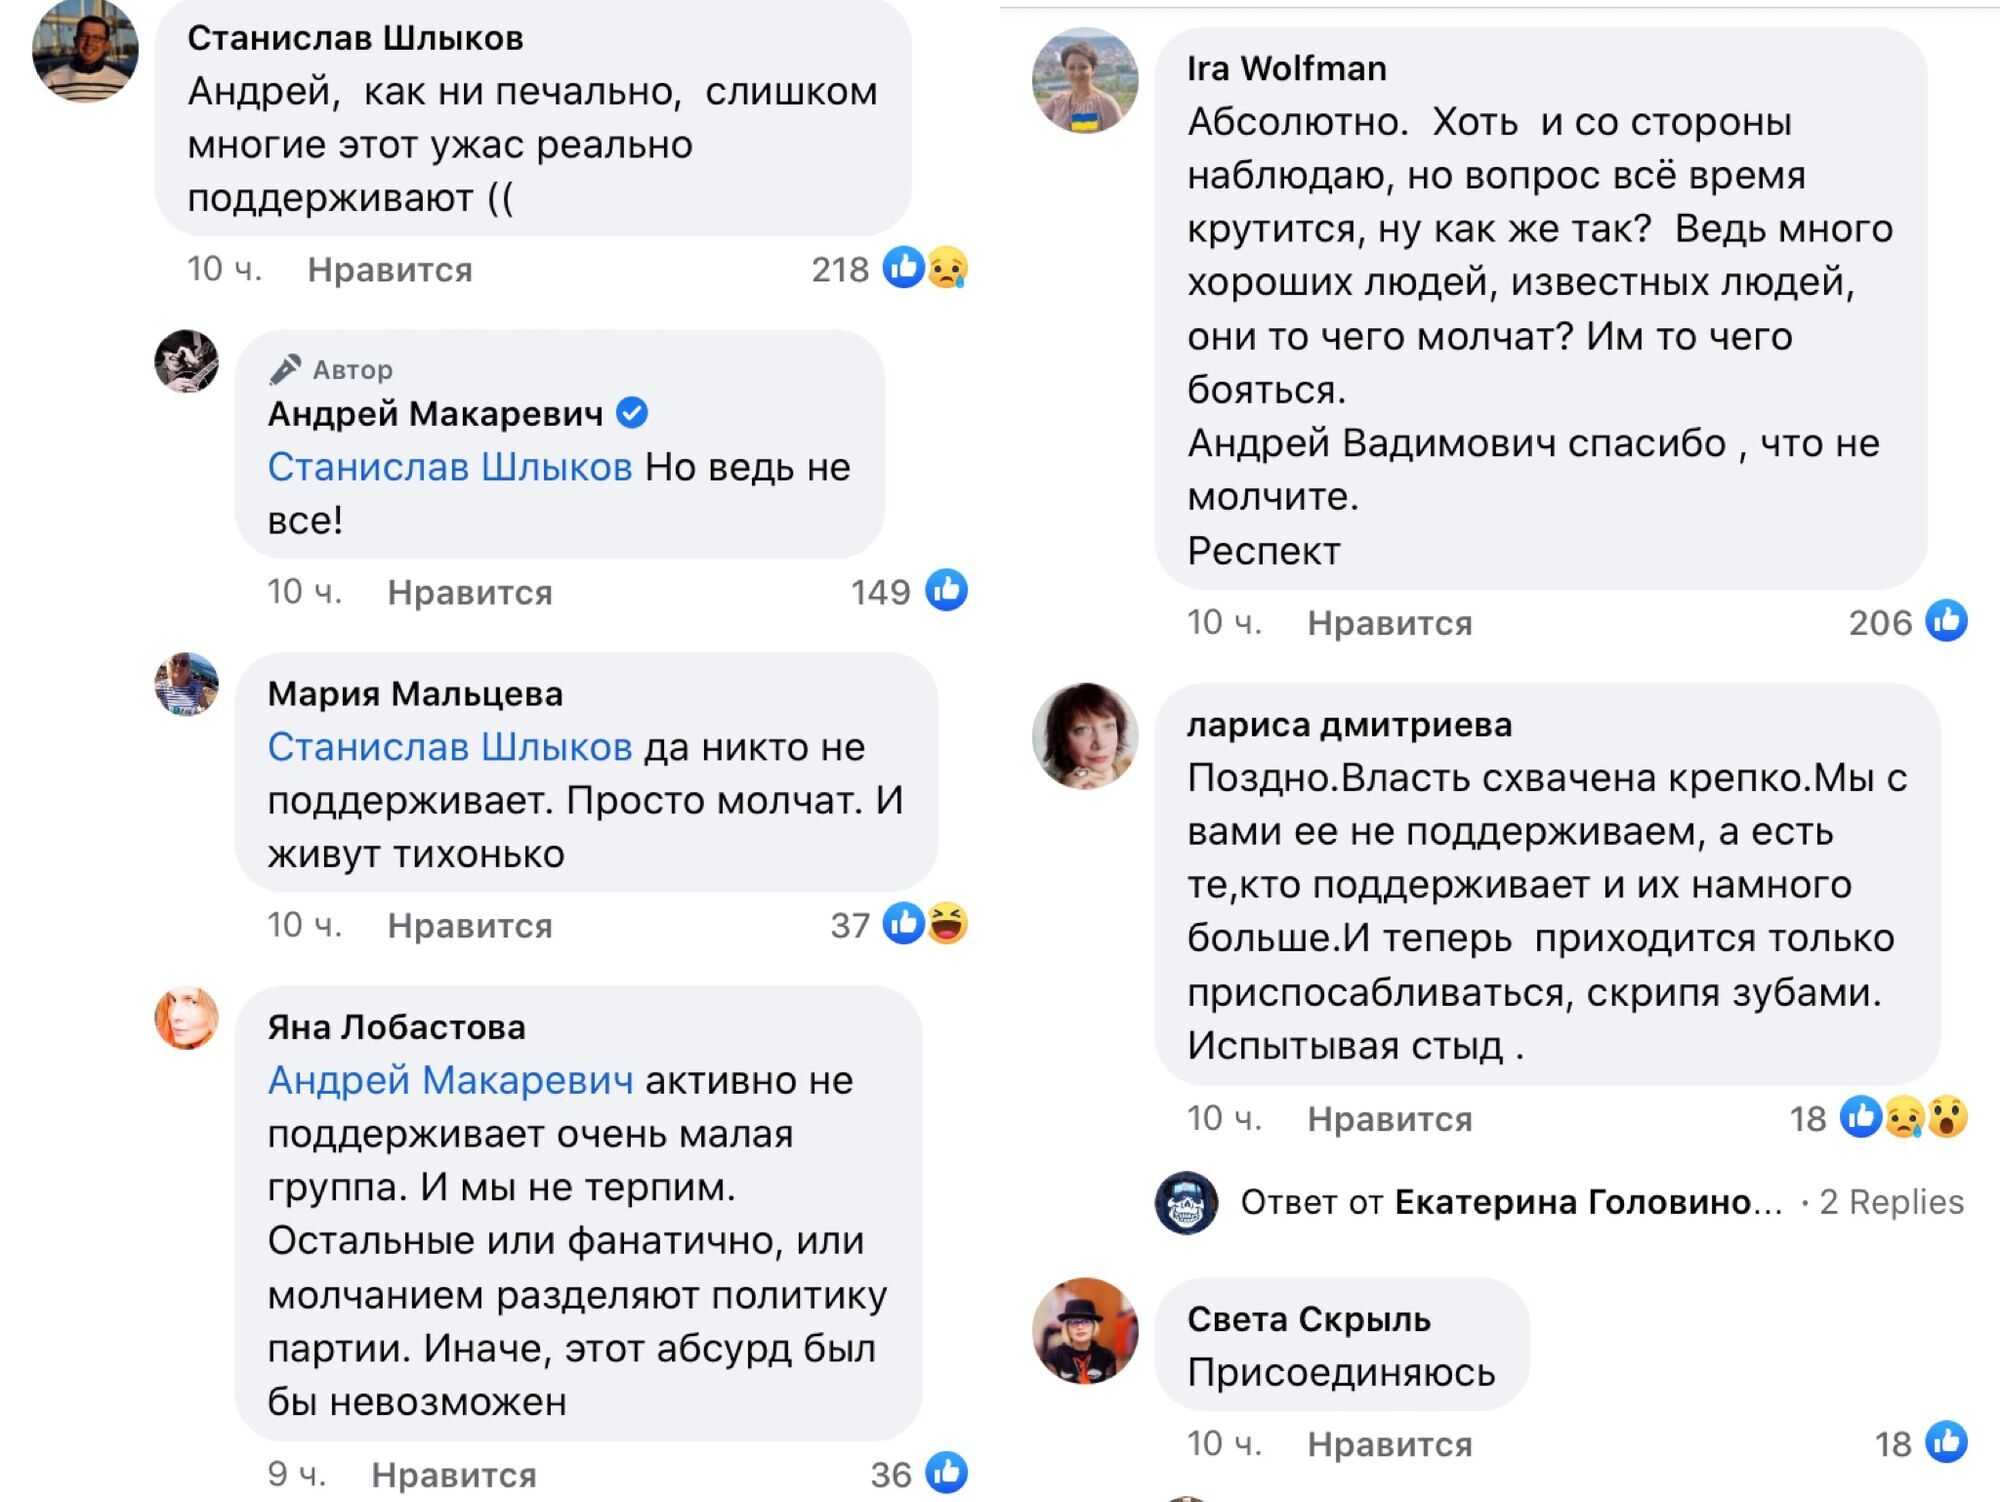 Комментарии под публикацией Макаревича